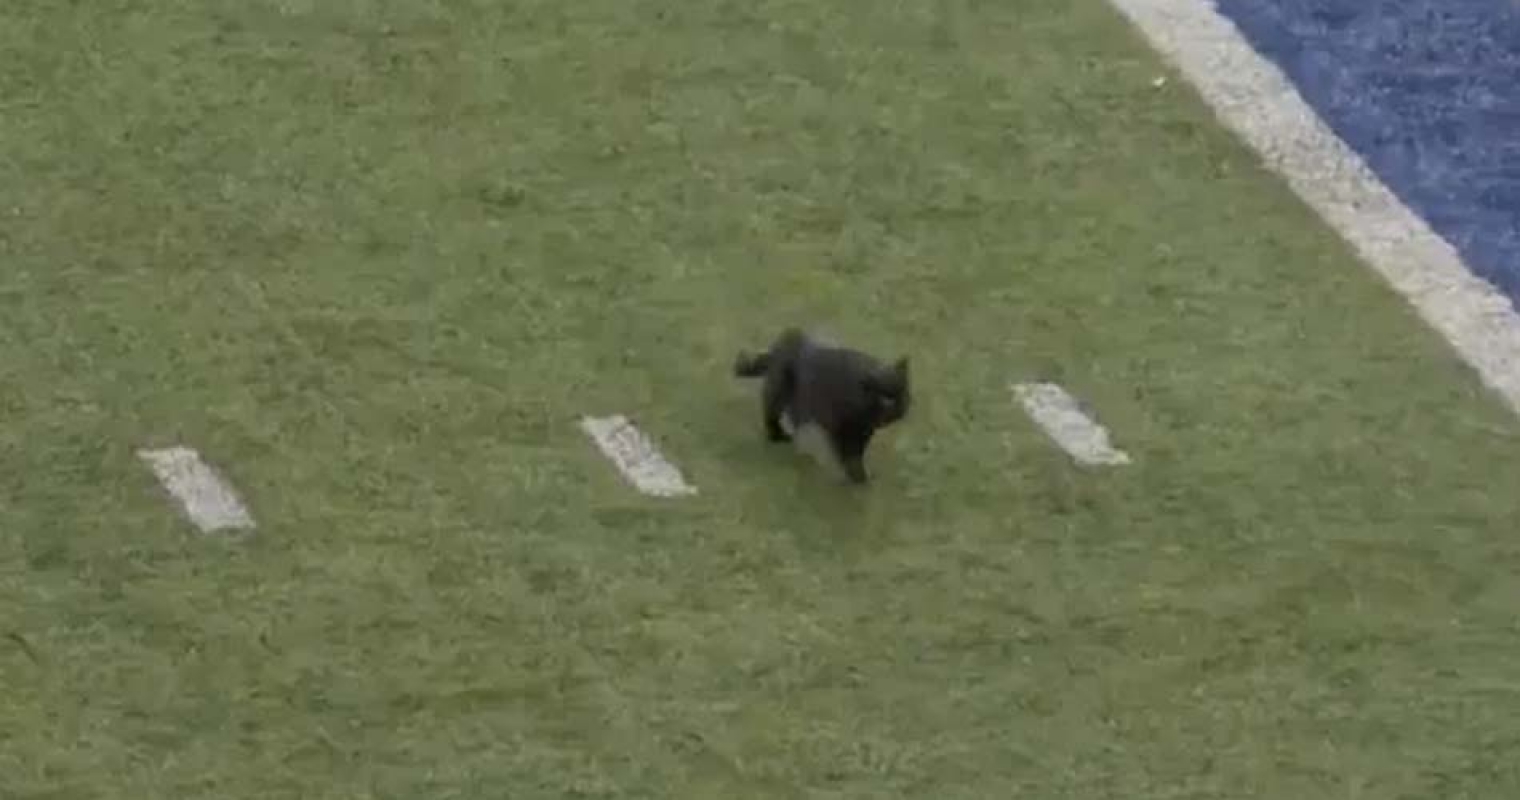 Gato preto invade jogo de futebol e leva torcedores ao delírio